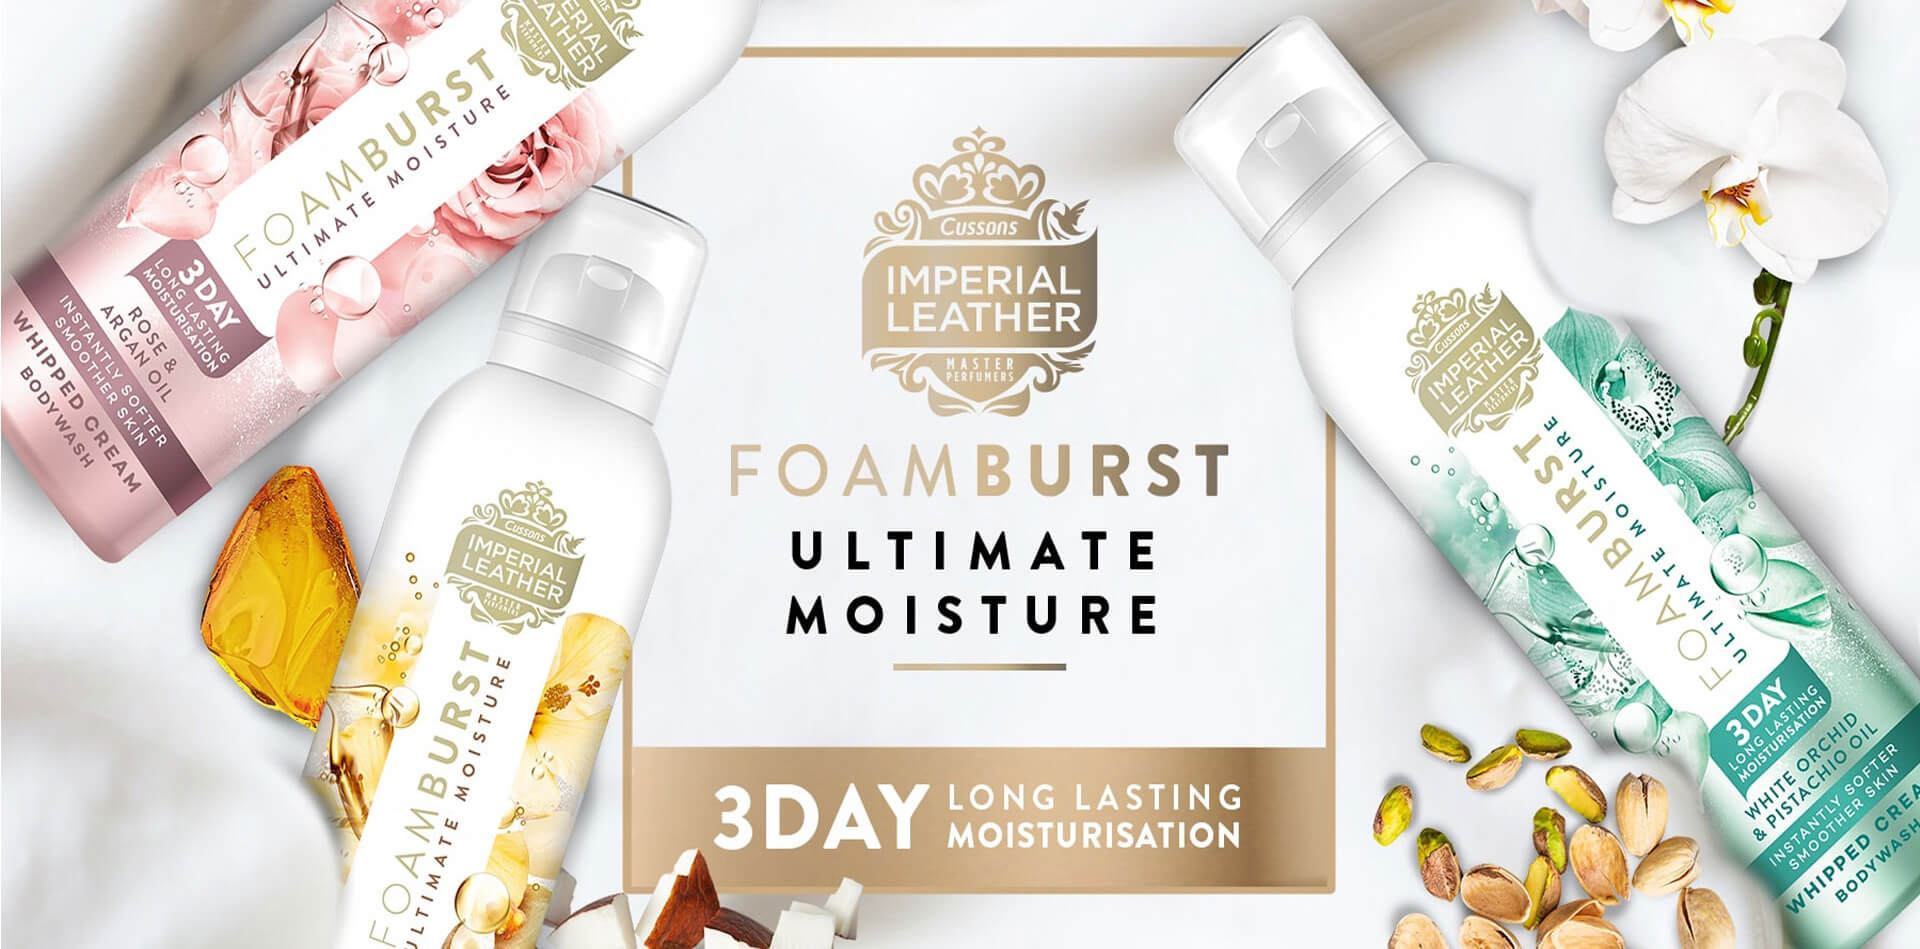 Foamburst Ultimate Moisture - 3 Day Long Lasting Moisturisation